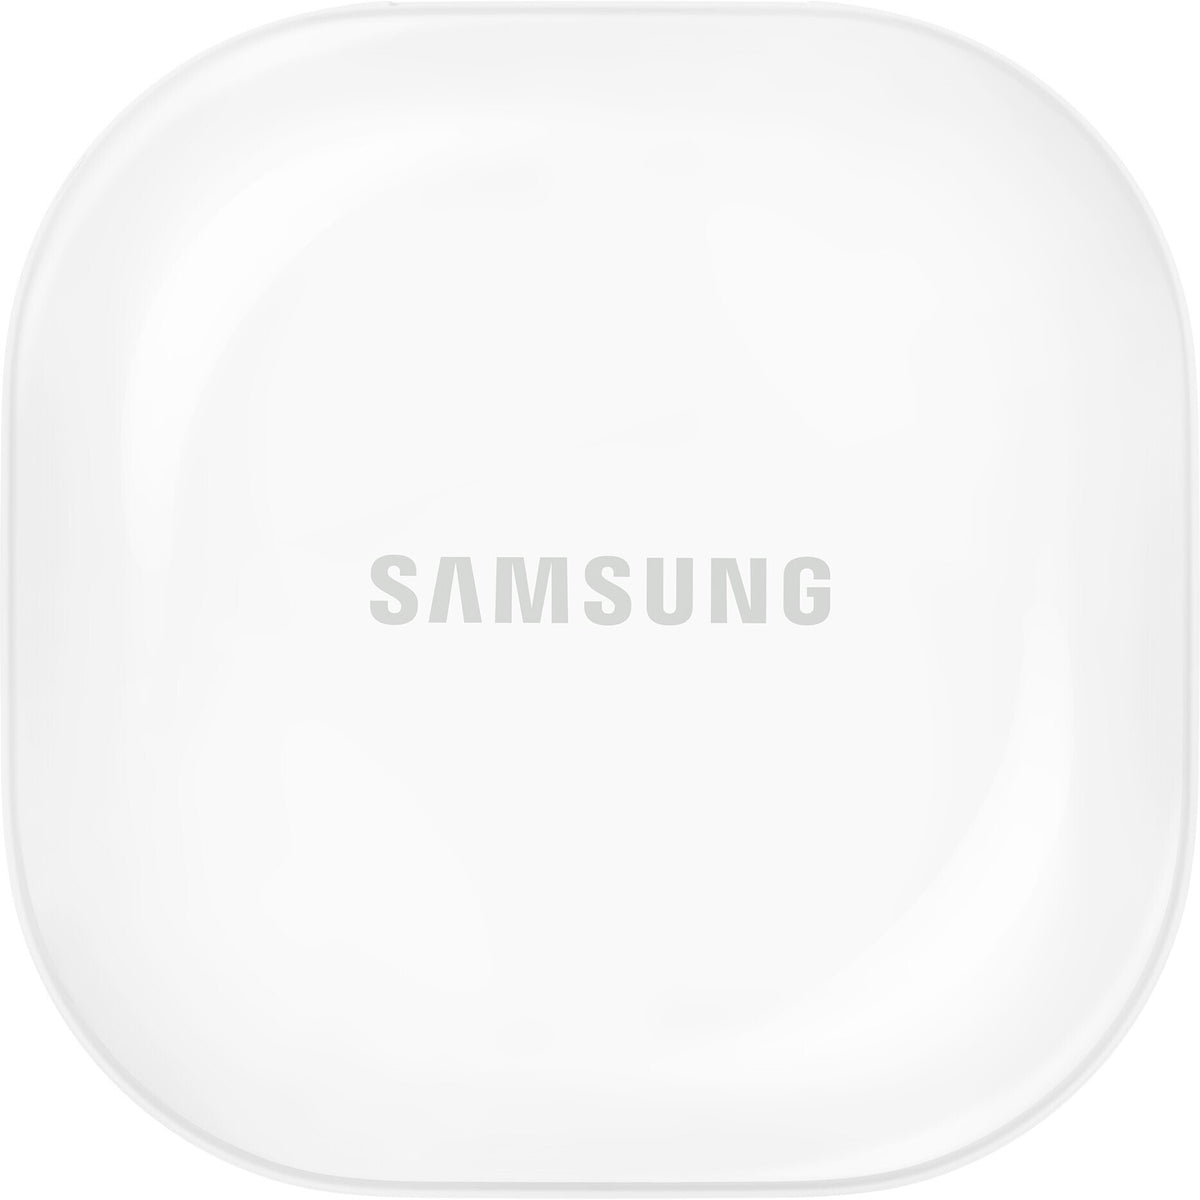 True Wireless sluchátka Samsung Galaxy Buds2, fialová